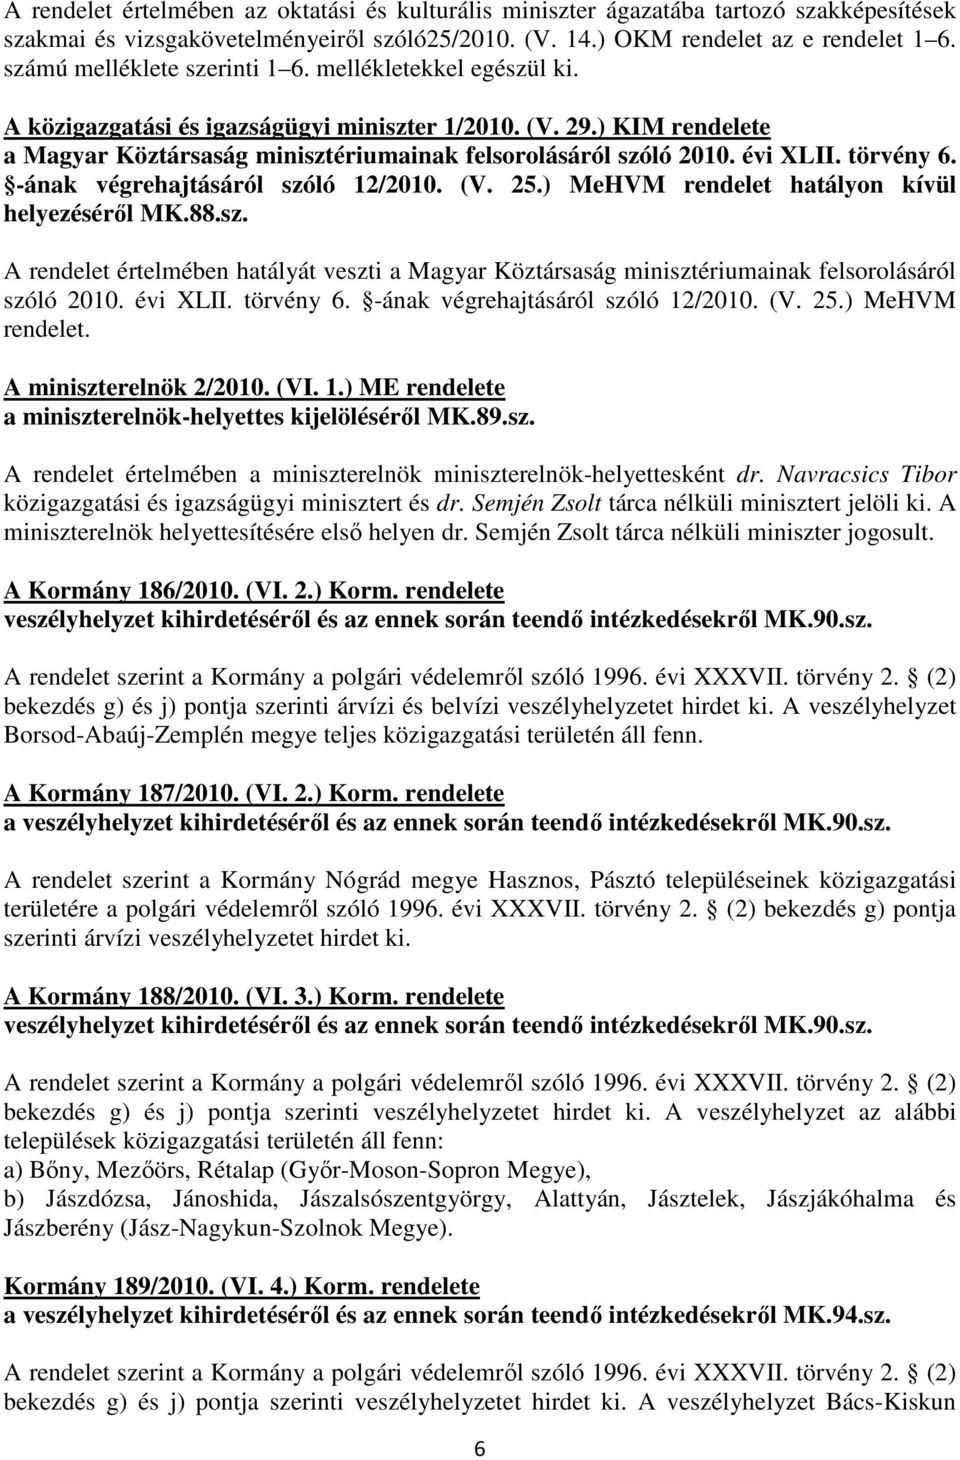 évi XLII. törvény 6. -ának végrehajtásáról szóló 12/2010. (V. 25.) MeHVM rendelet hatályon kívül helyezésérıl MK.88.sz. A rendelet értelmében hatályát veszti a Magyar Köztársaság minisztériumainak felsorolásáról szóló 2010.